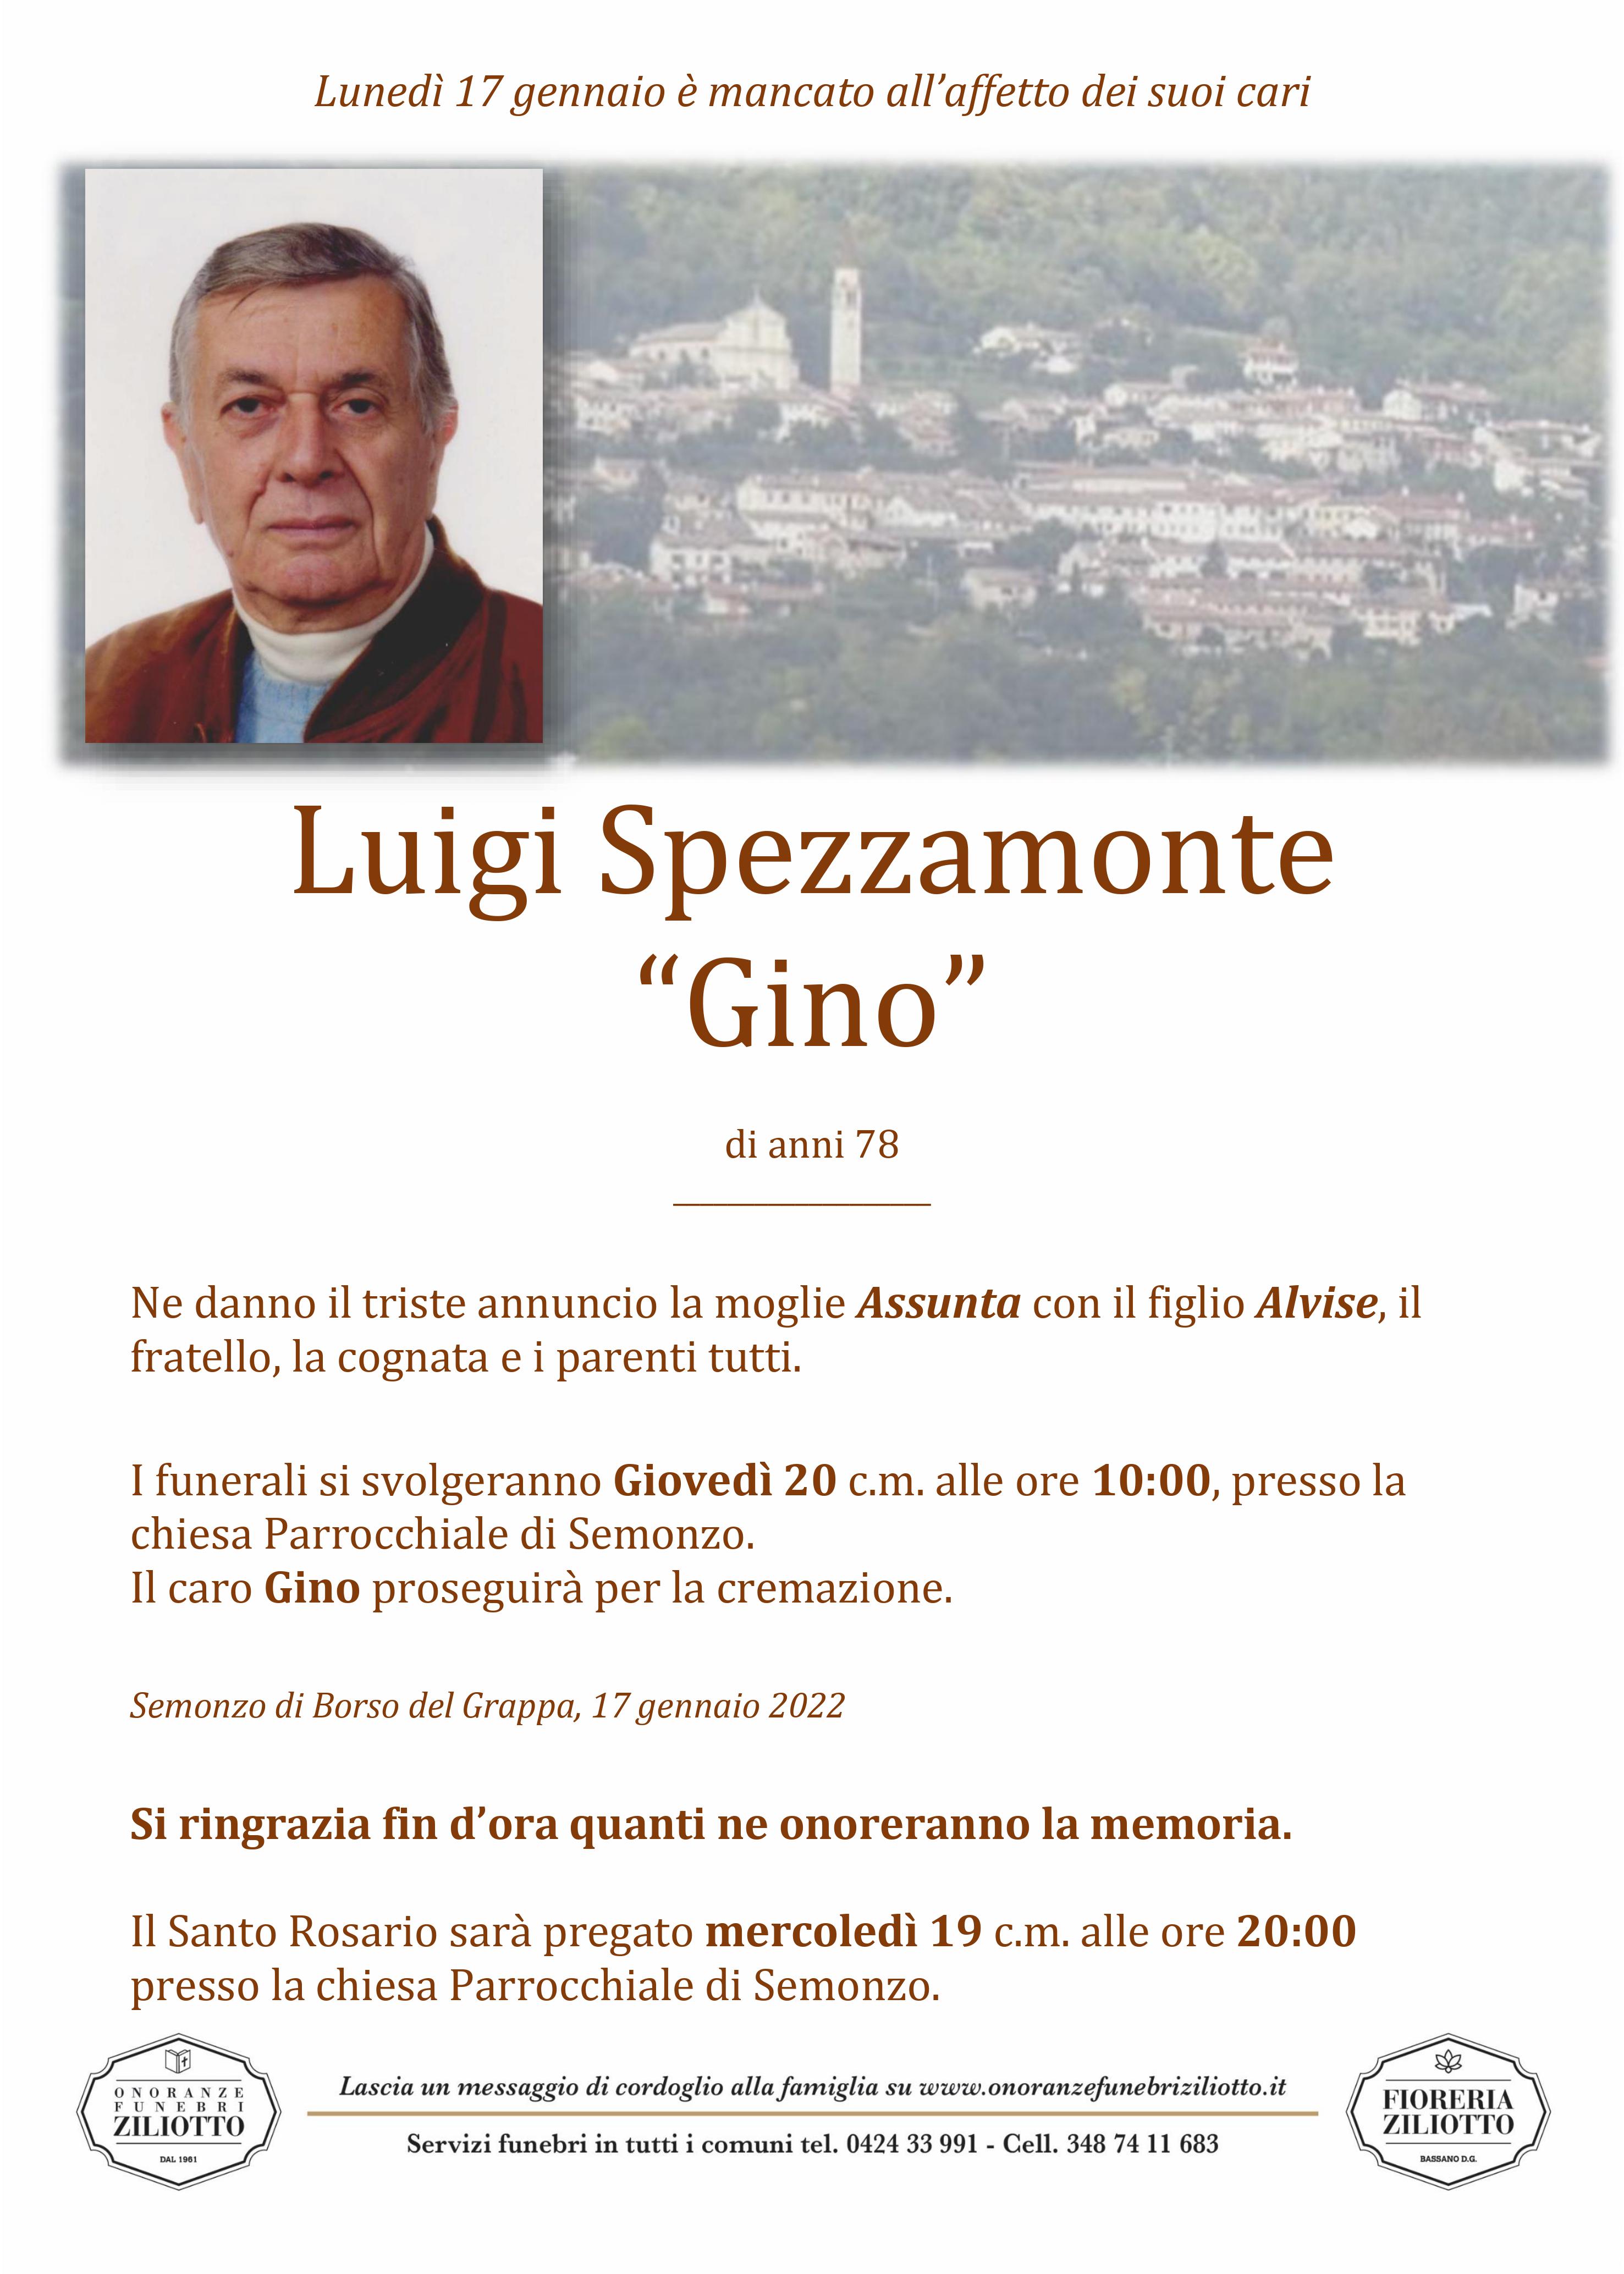 Luigino Spezzamonte - 78 anni - Semonzo di Borso del Gr